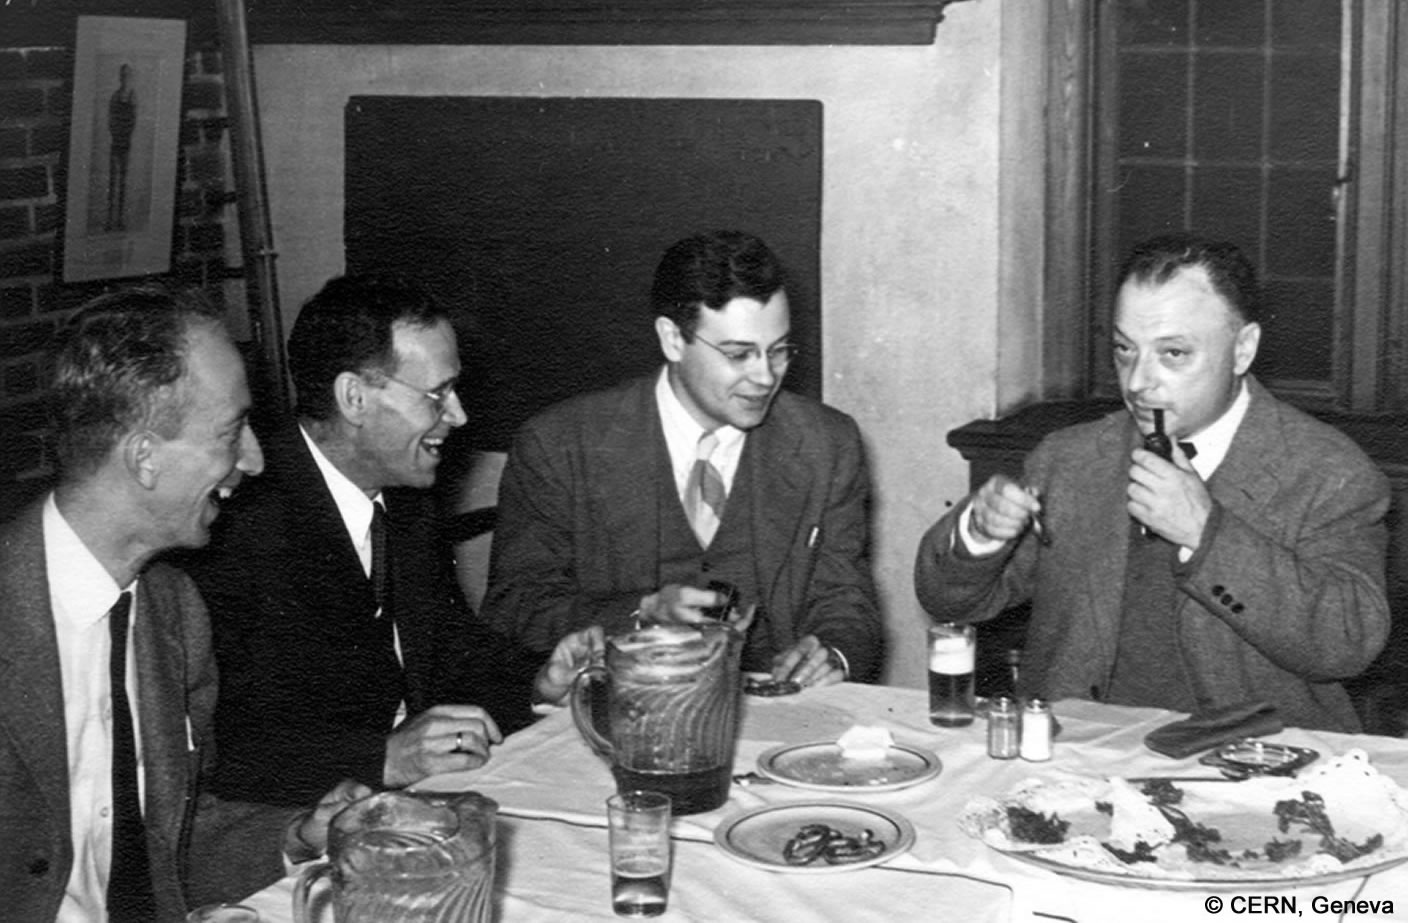 Wolfgang Pauli sitzt mit drei Männern an einem Tisch und ist dabei, sich eine Pfeife anzuzünden. Es stehen leere Teller und Gläser auf dem Tisch